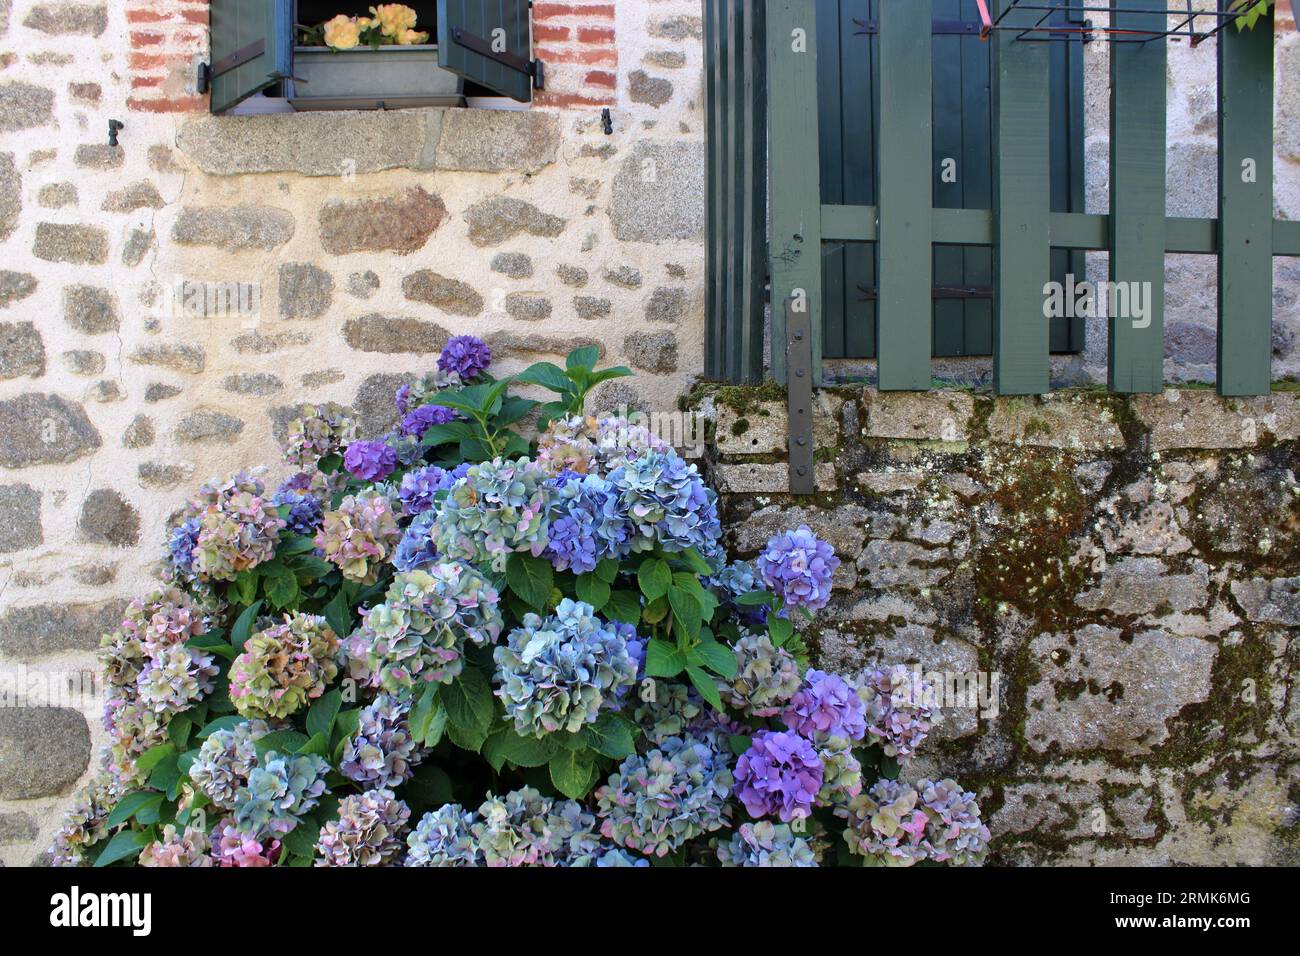 Jolie vue des hortensias fixés contre le mur d'une maison ici située à Masgot une célèbre ville de sculpture située dans la Creuse en France. Banque D'Images